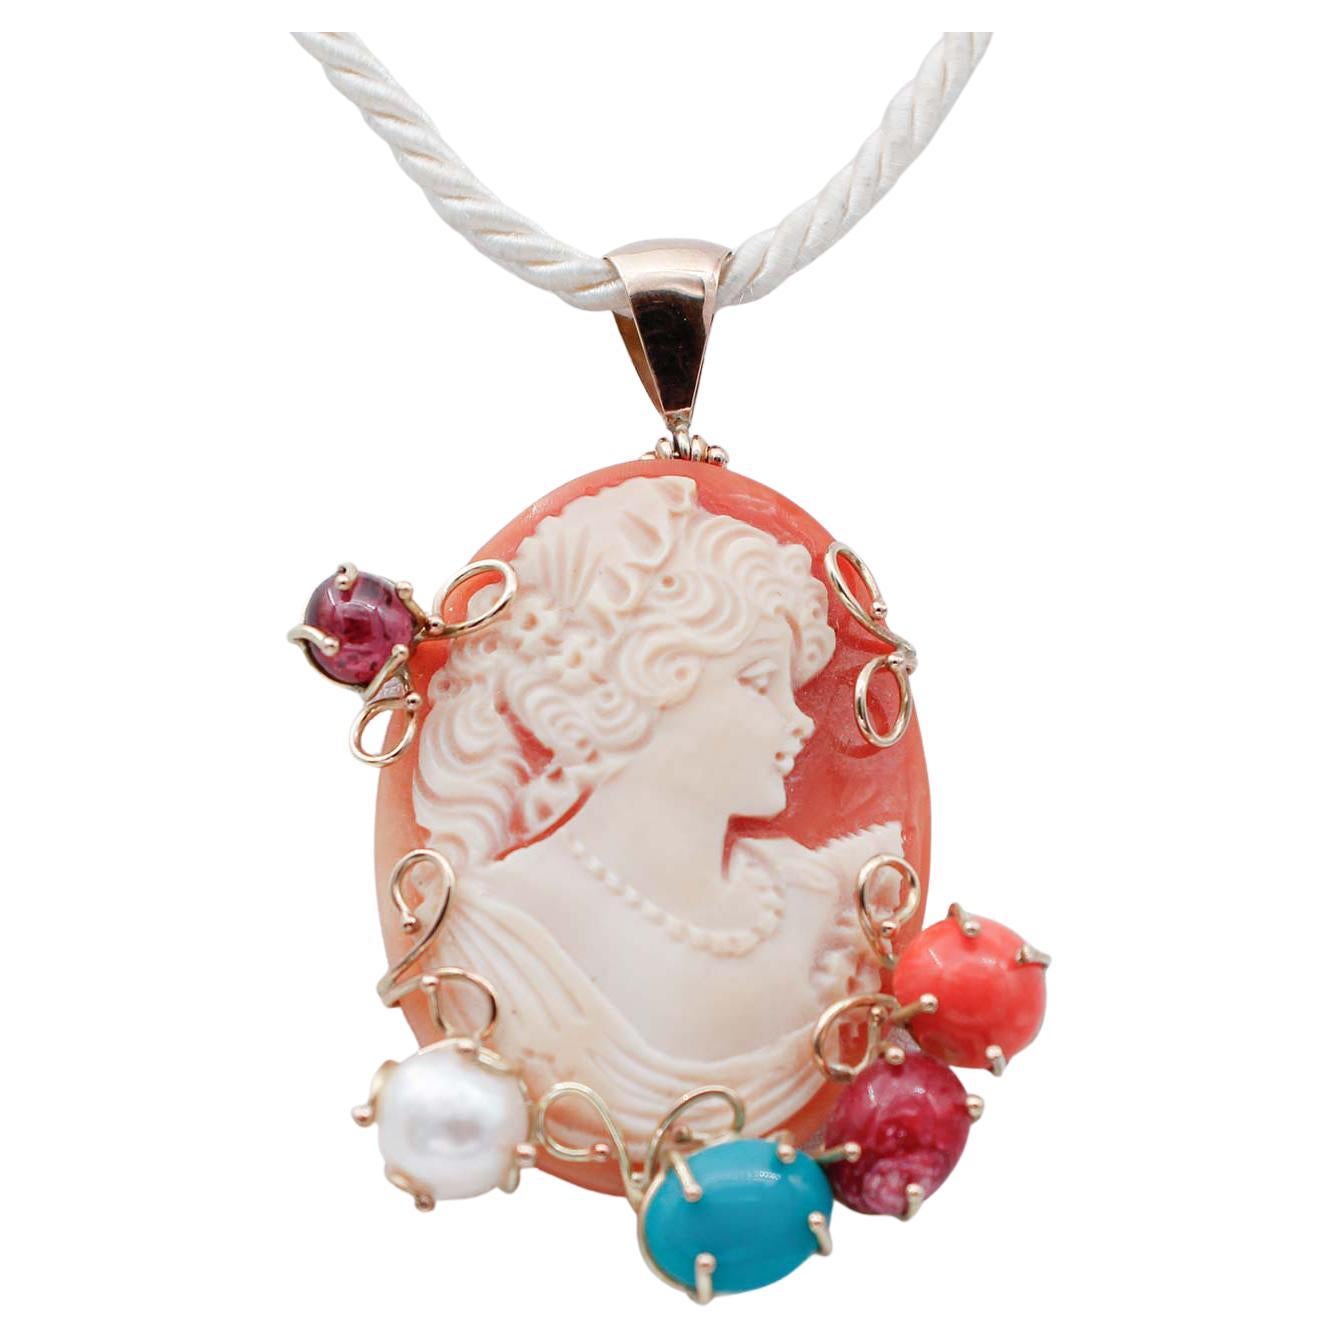 Collier pendentif en or rose 9 carats avec corail, perles, rubis, turquoises, grenats et camée